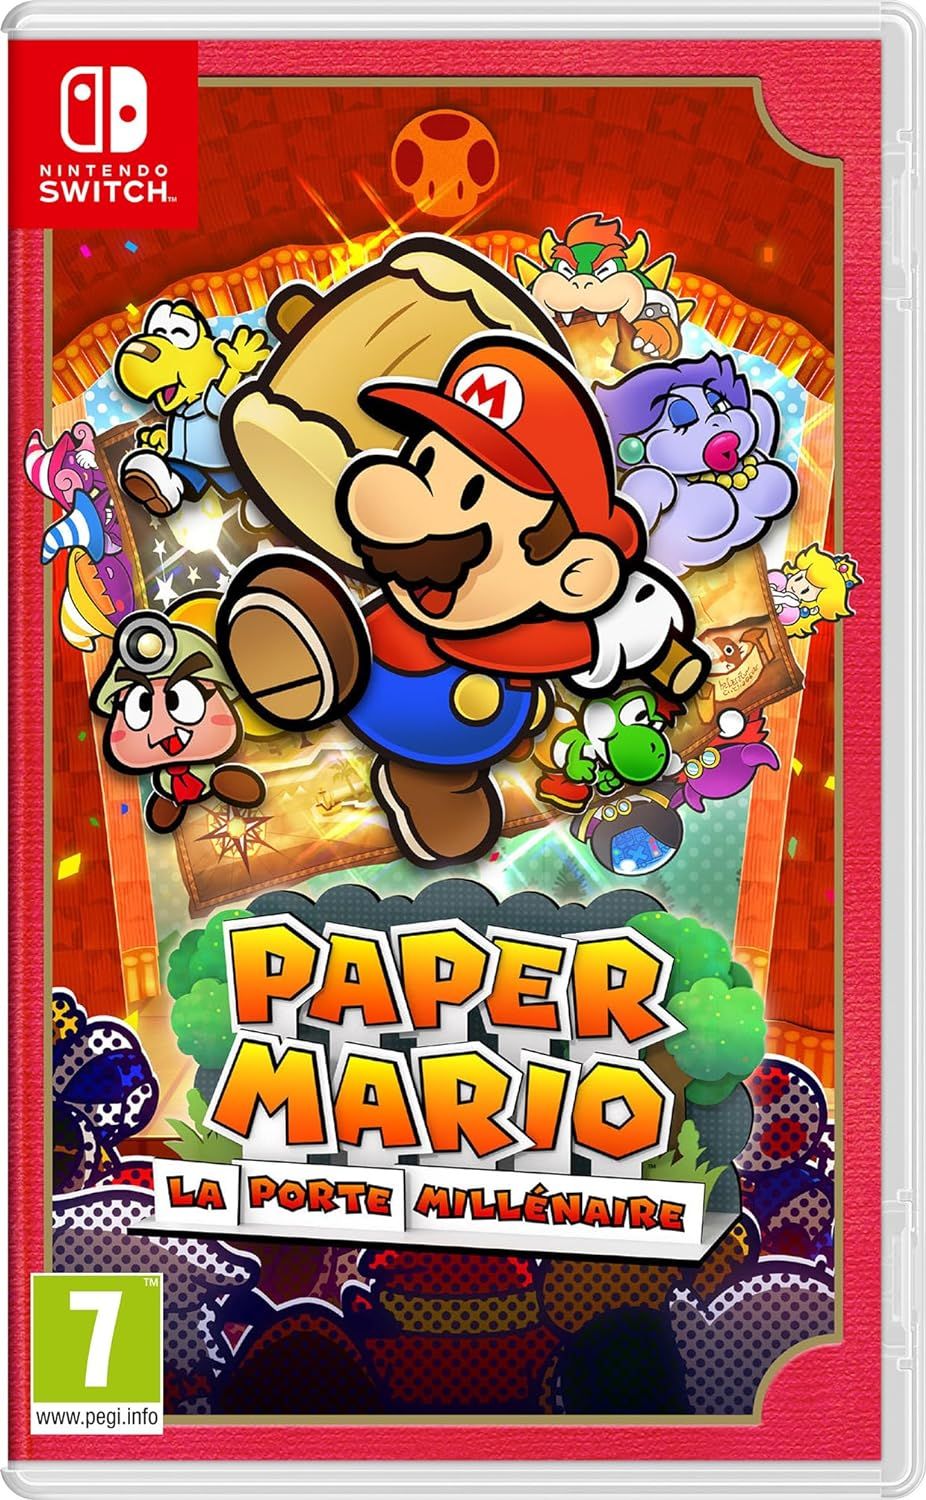 Retrouvez notre TEST : Paper Mario : La Porte Millnaire - Switch